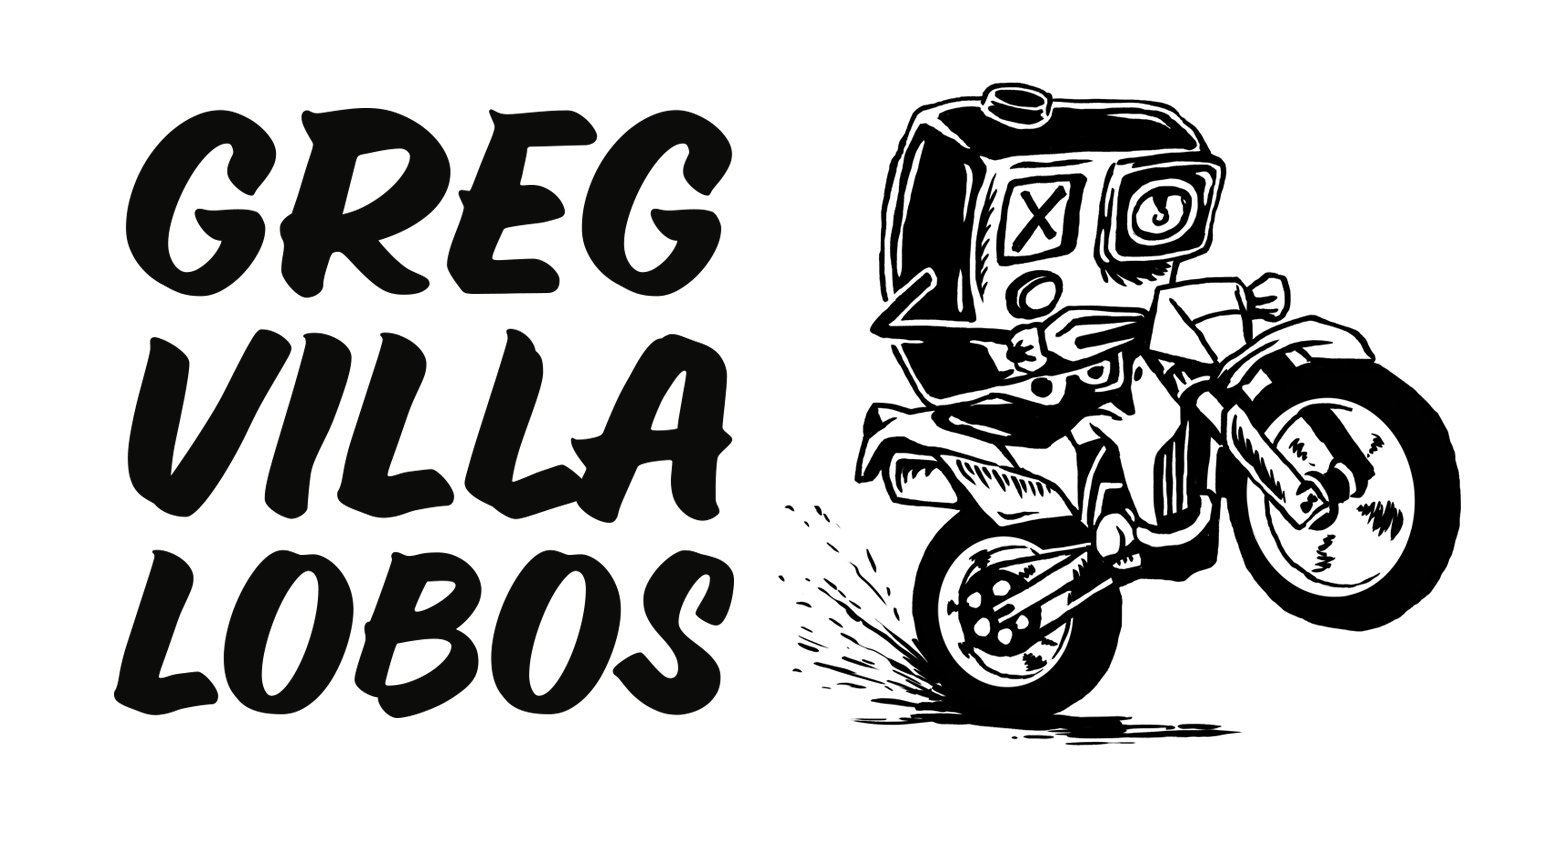 Greg Logo - Greg Villalobos – I hope you like bikes